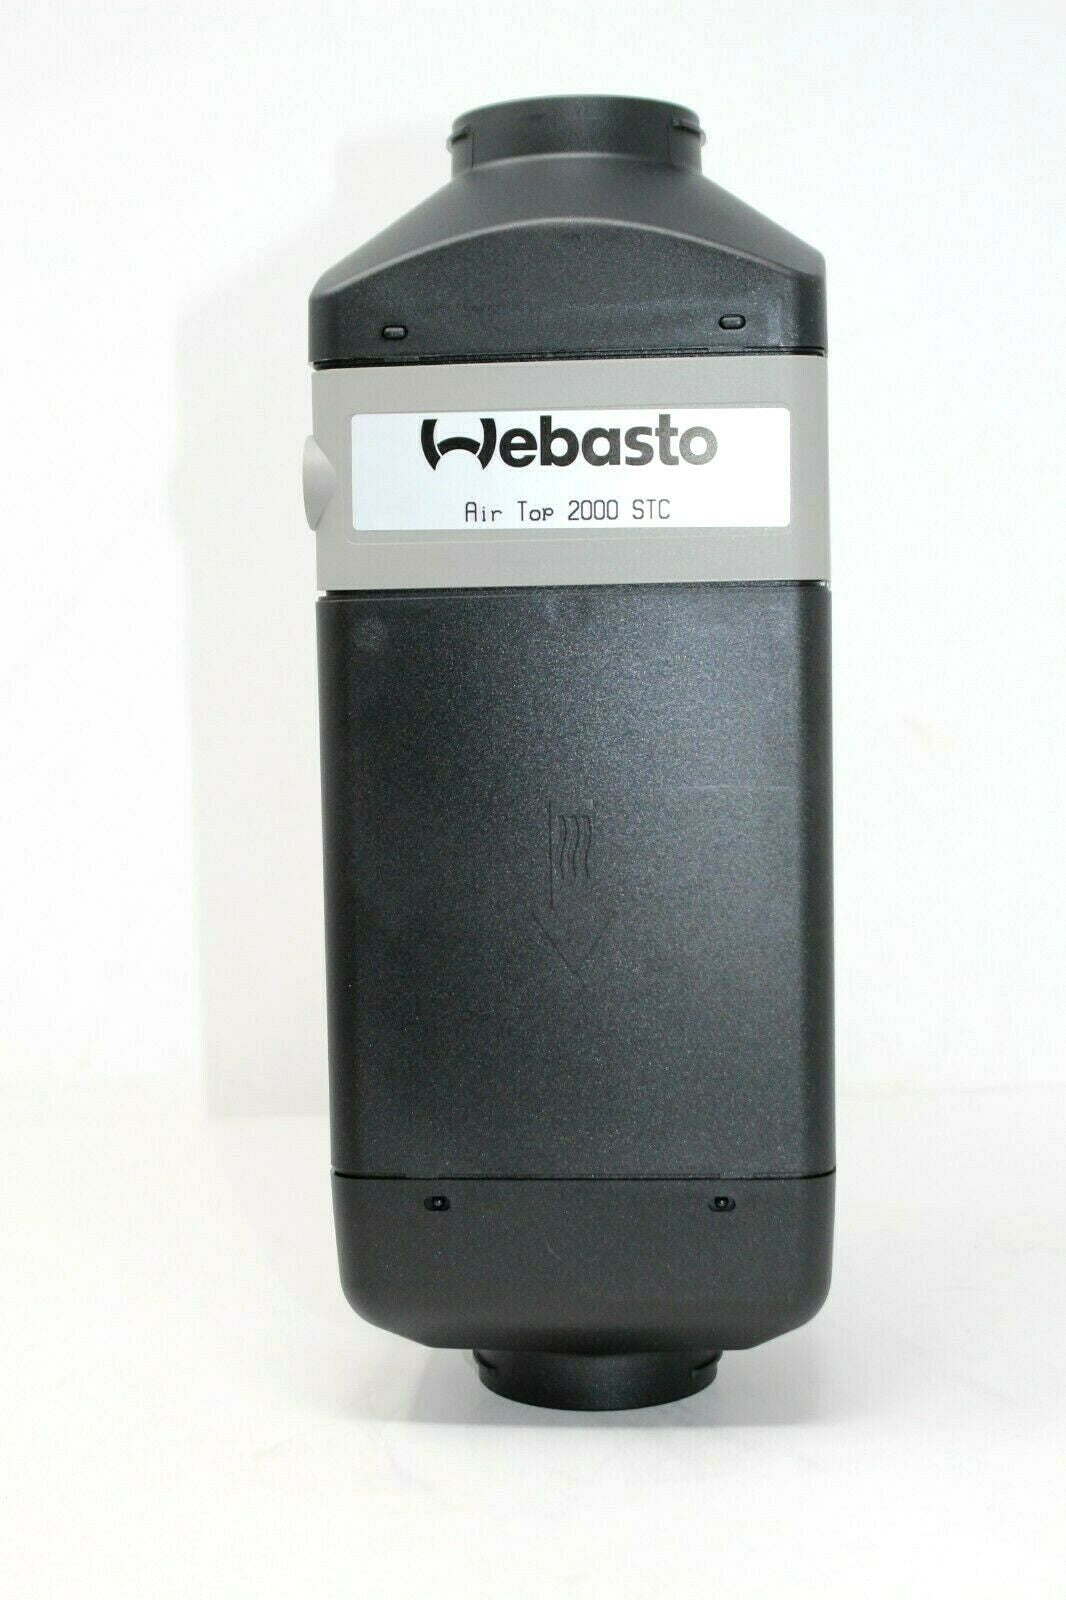 Webasto Air Top 2000STC 12v 2kW Gasoline Heater Kit CO2 Adjusted 6400' 90-3-0021